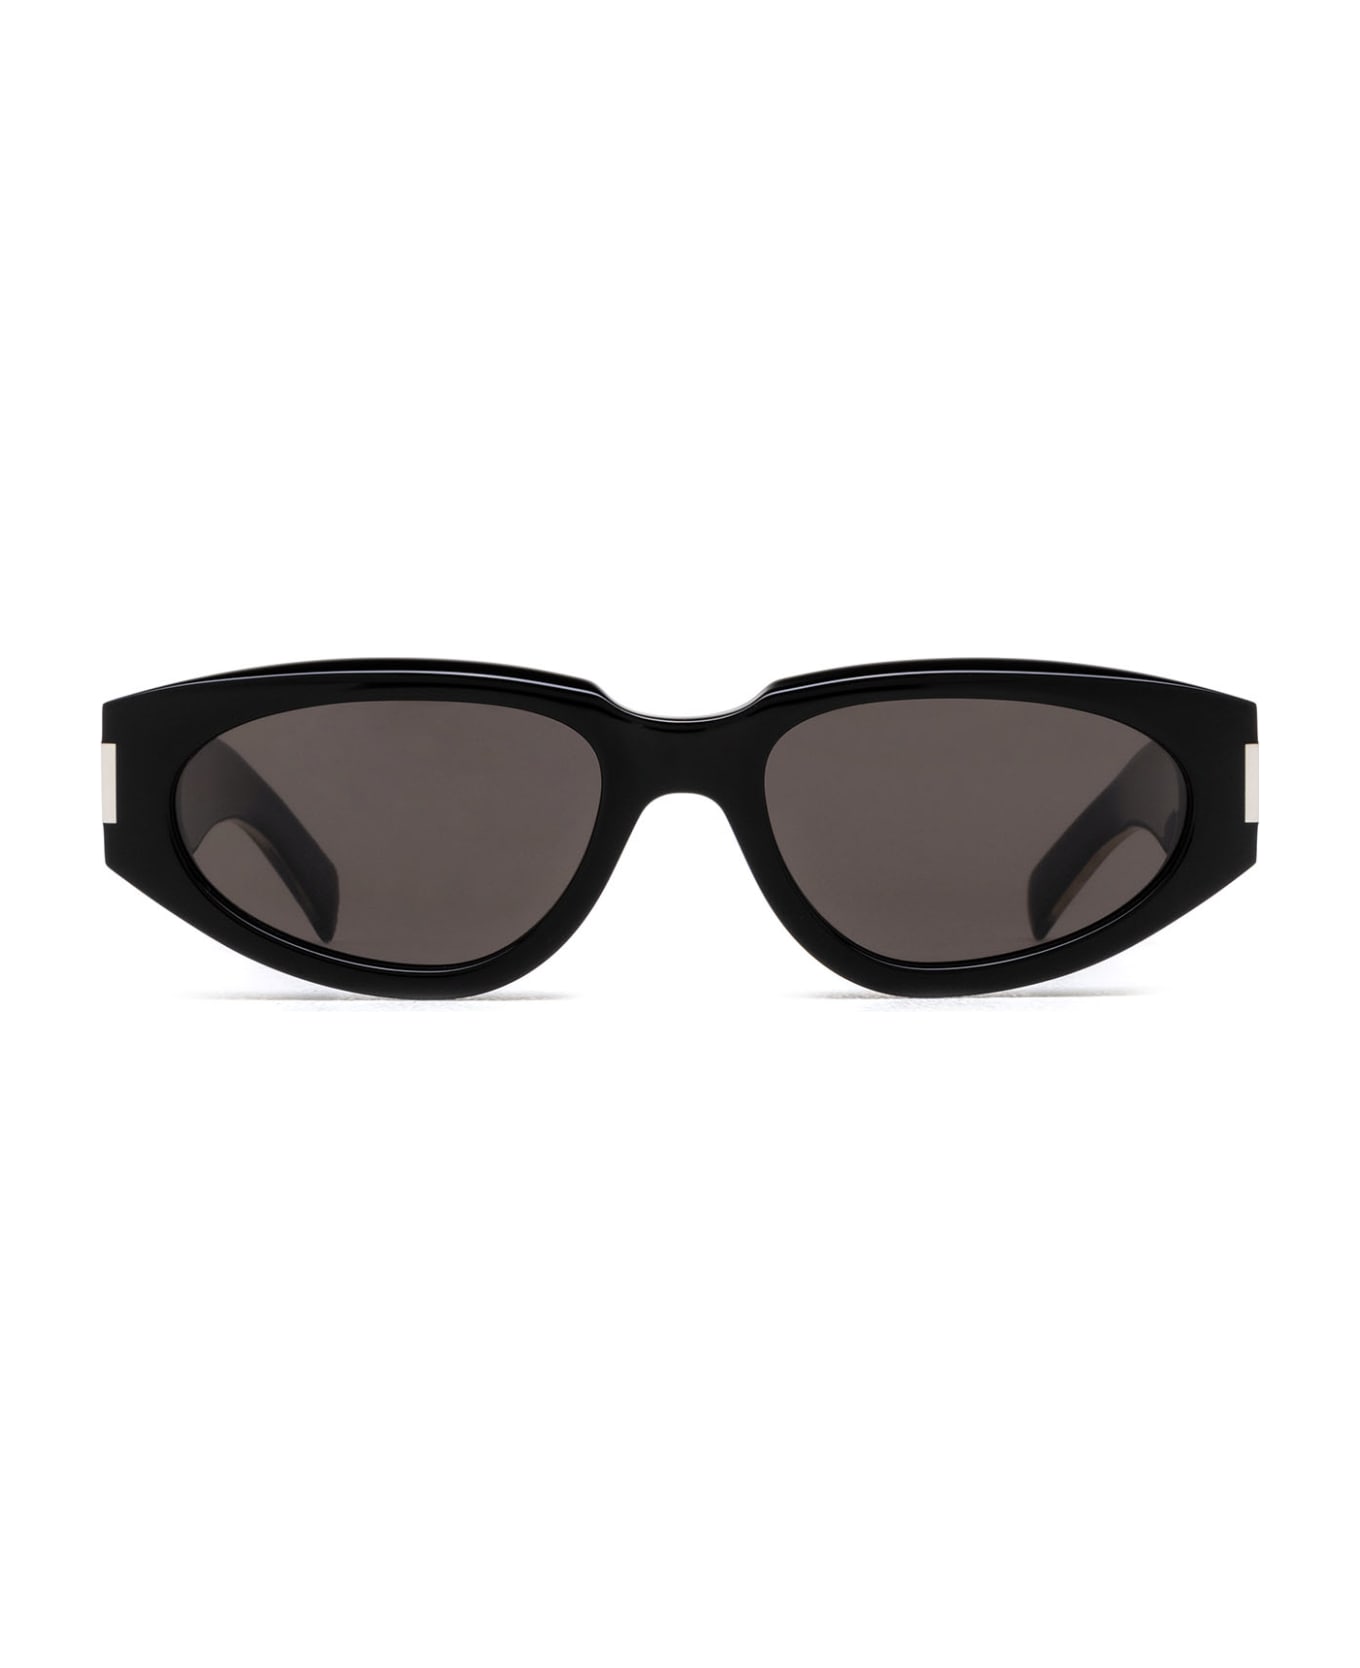 Saint Laurent Eyewear Sl 618 Black Sunglasses - Black